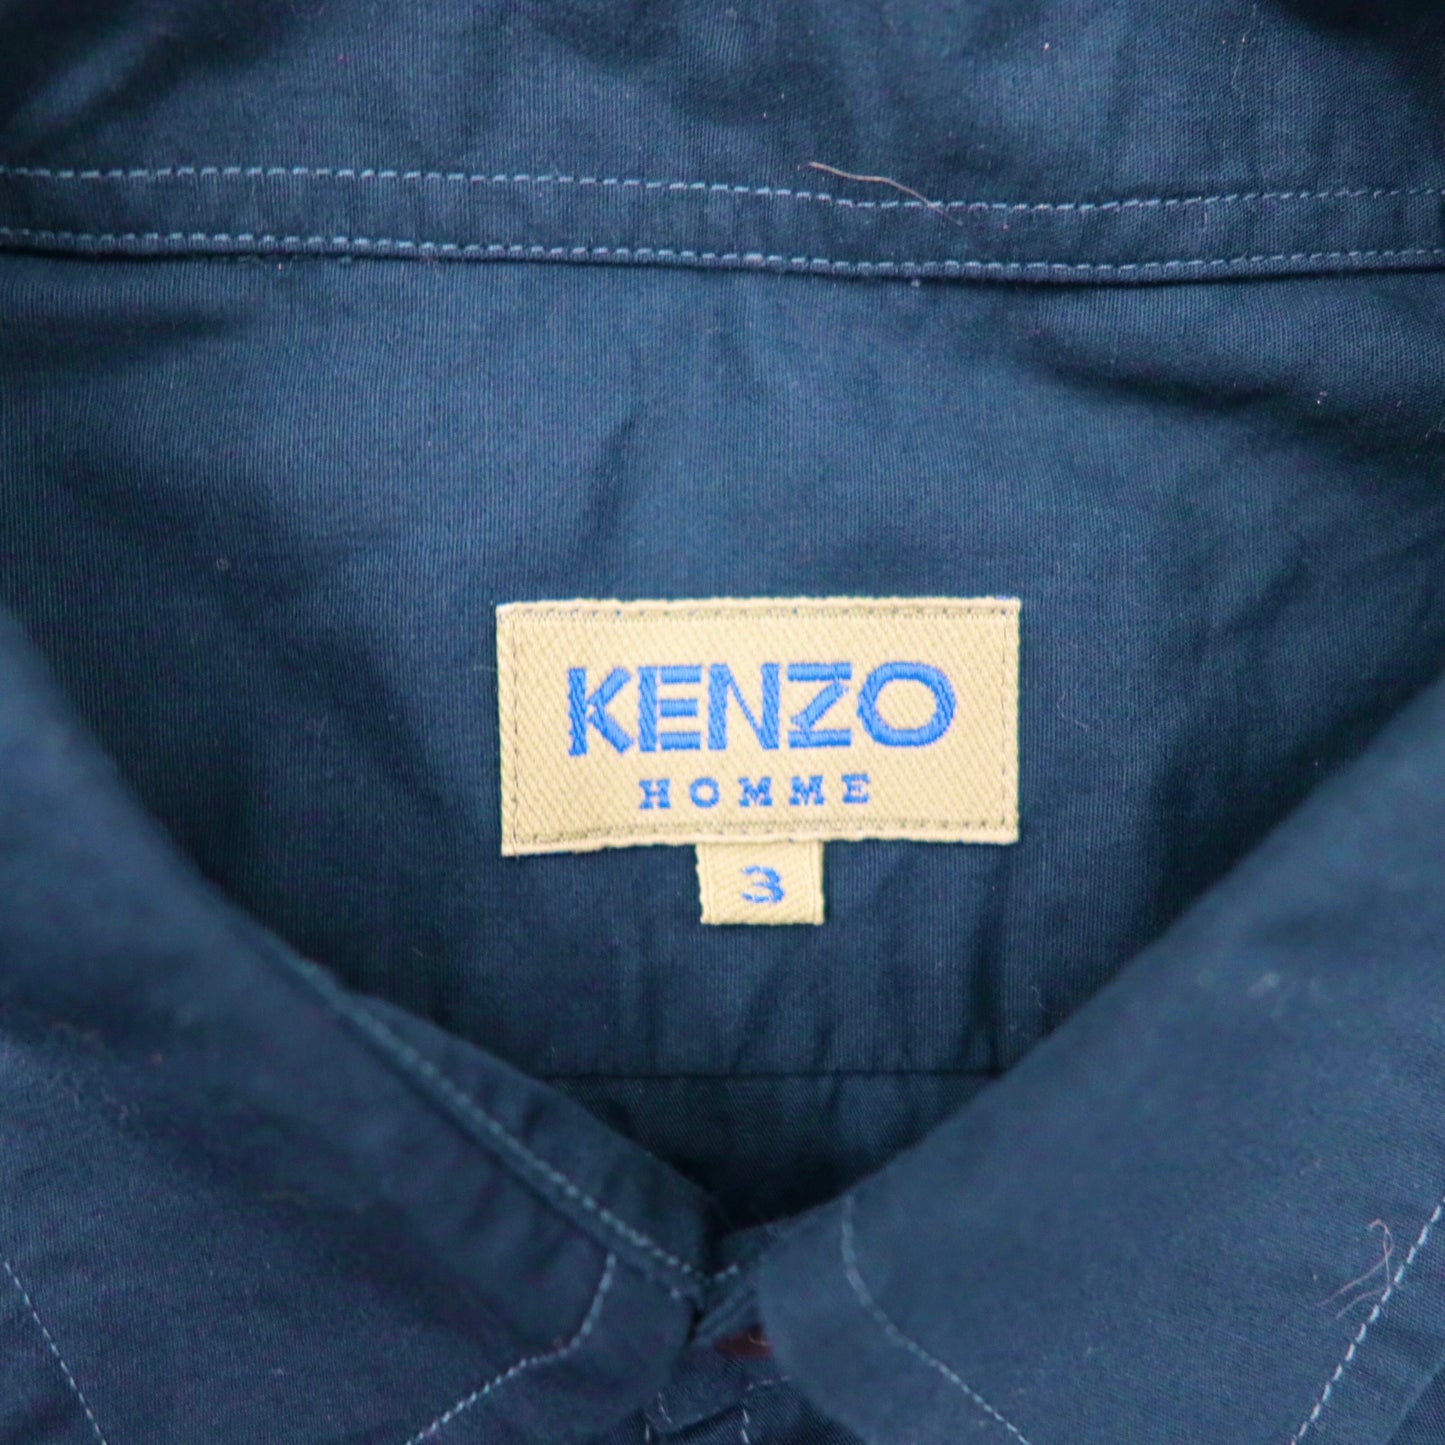 KENZO HOMME シャツ 3 ネイビー コットン